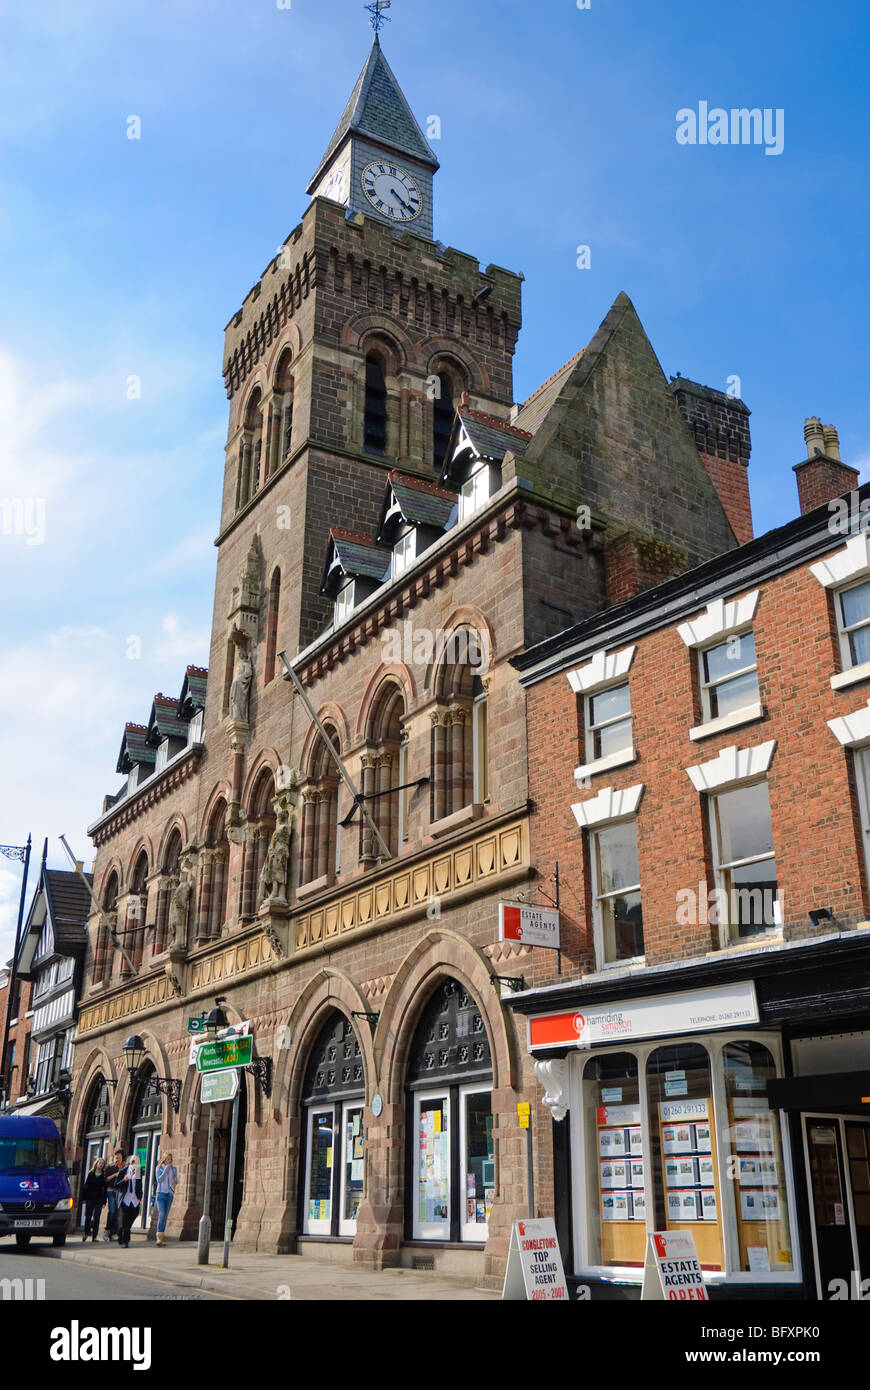 Grand Gebäude in einer kleinen englischen Stadt: Congleton Rathaus, Cheshire. Klicken Sie hier für mehr Details. Stockfoto